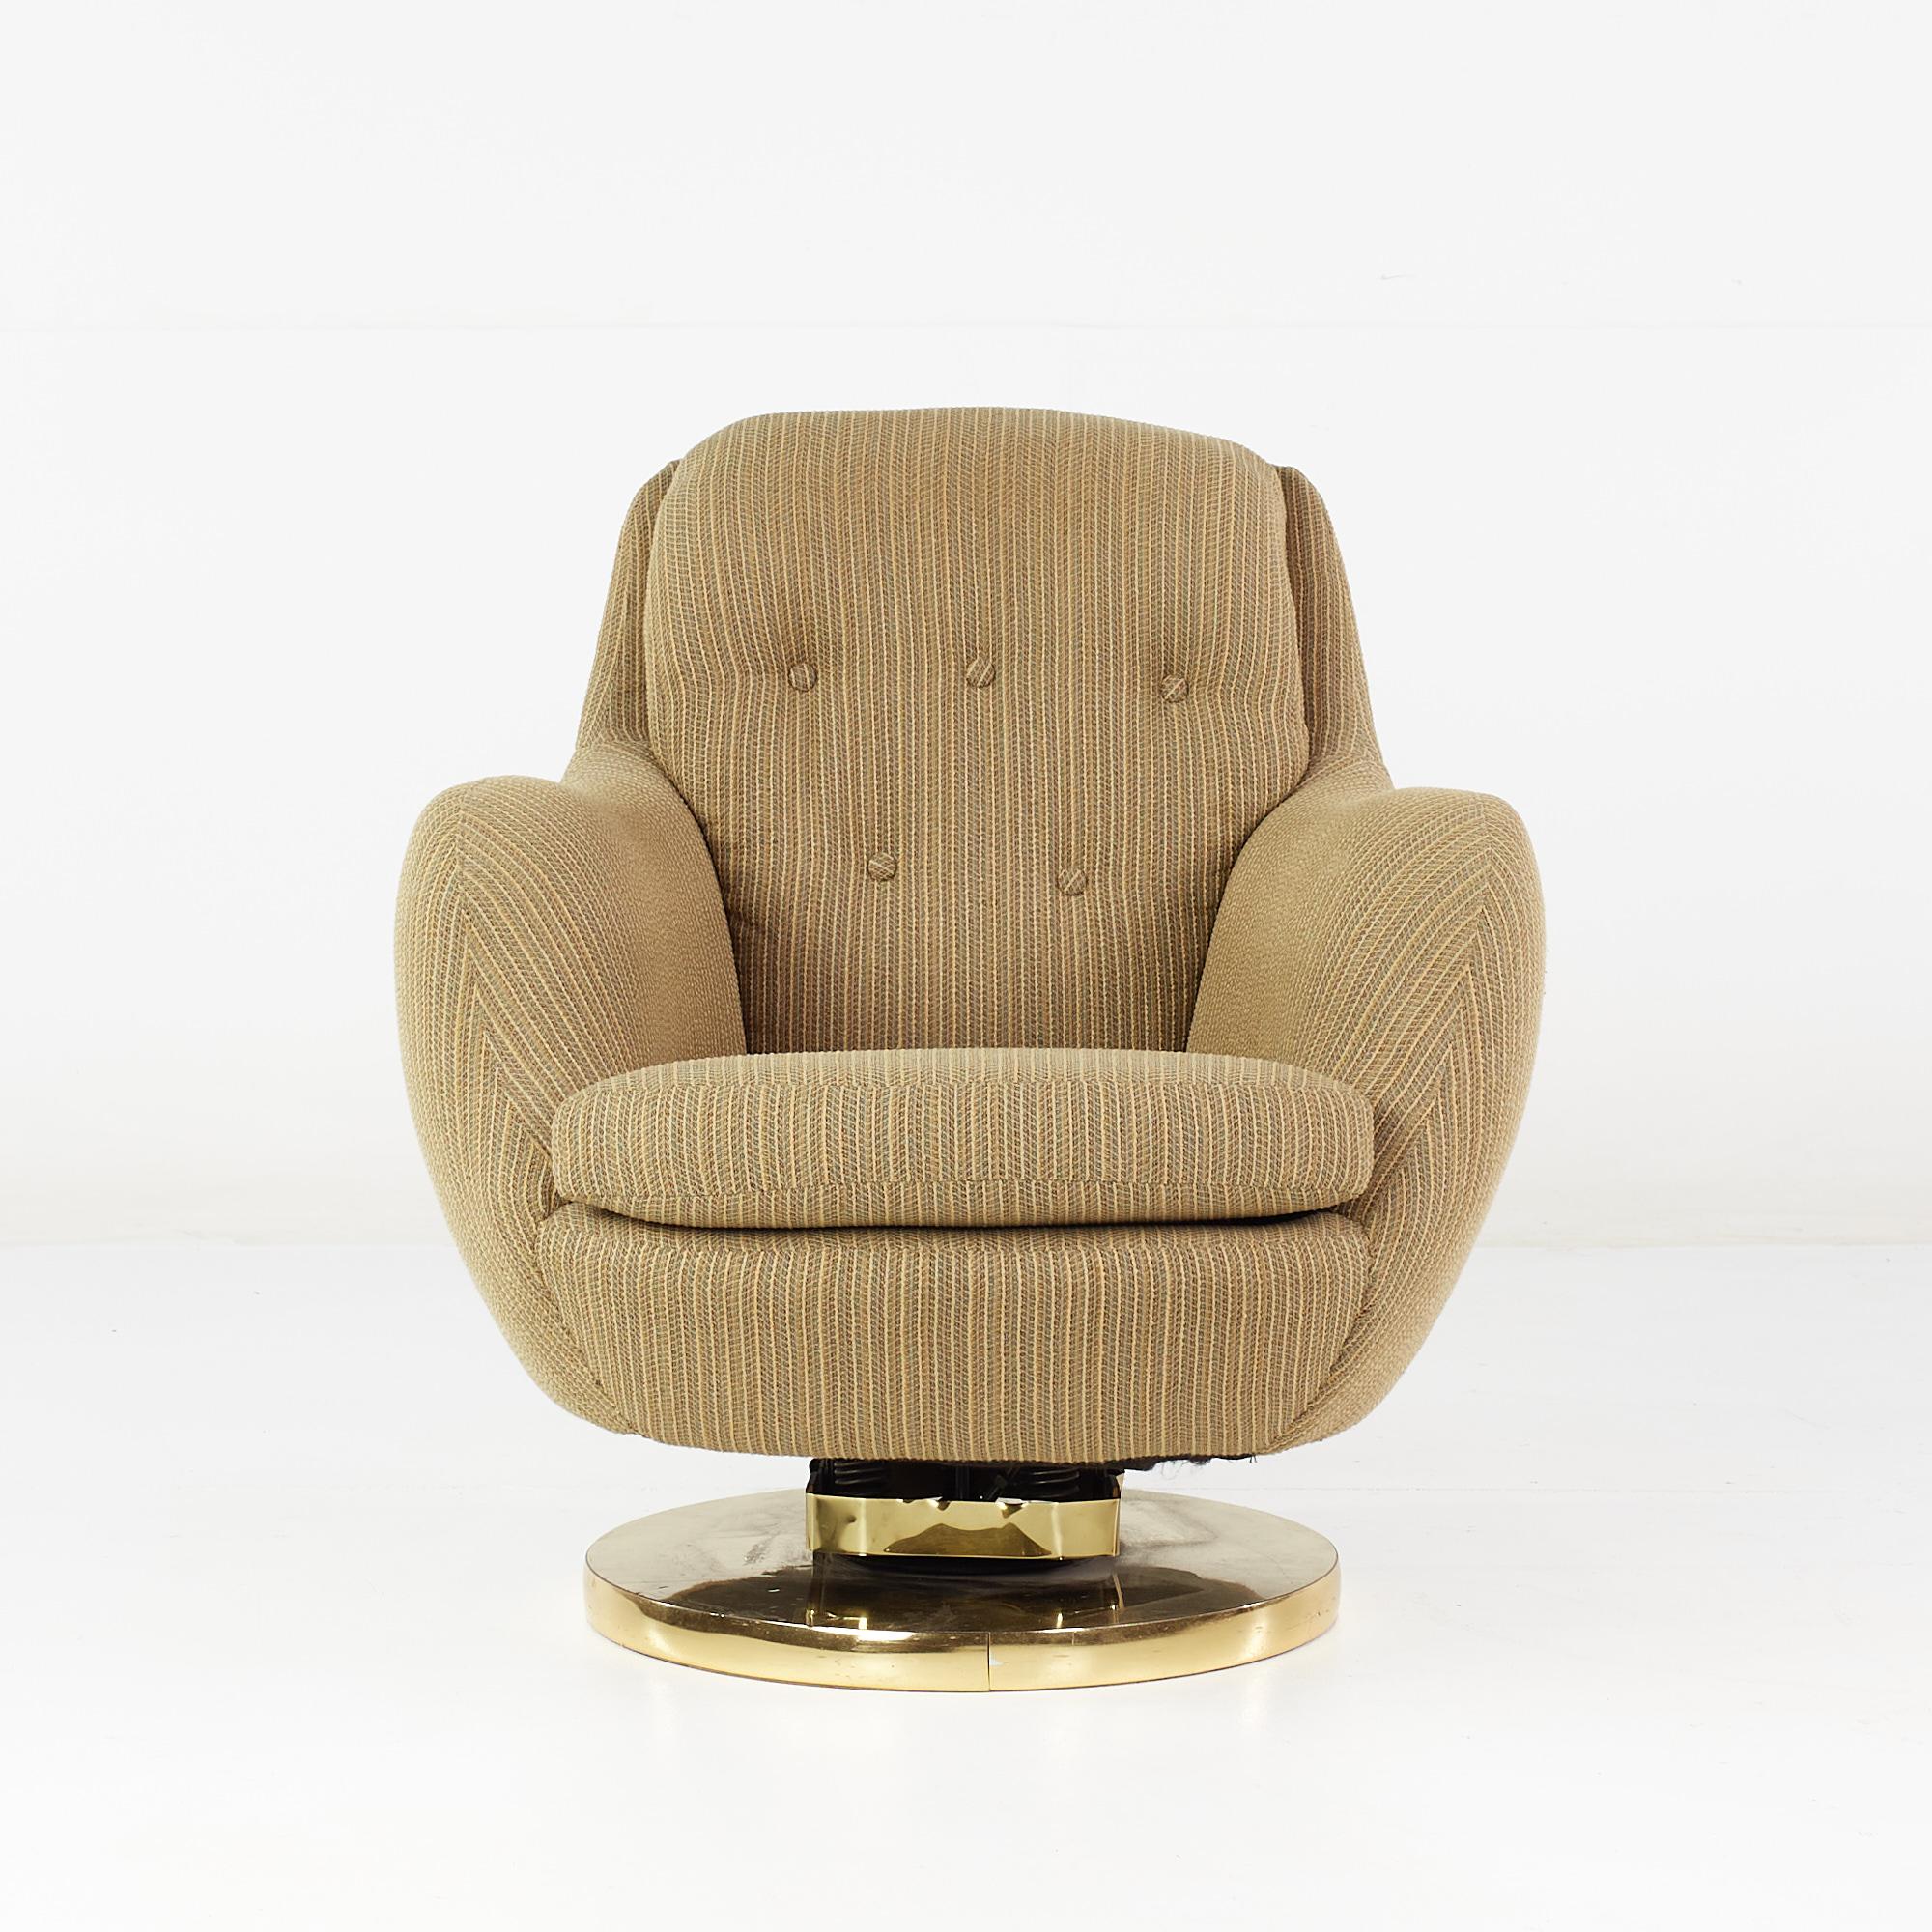 Milo Baughman Stil Mid Century Messing Drehfuß Lounge Stuhl

Dieser Stuhl misst: 30 breit x 33 tief x 32 Zoll hoch, mit einer Sitzhöhe von 16,5 und Armhöhe/Stuhlabstand von 23 Zoll

Alle Möbelstücke sind in einem so genannten restaurierten